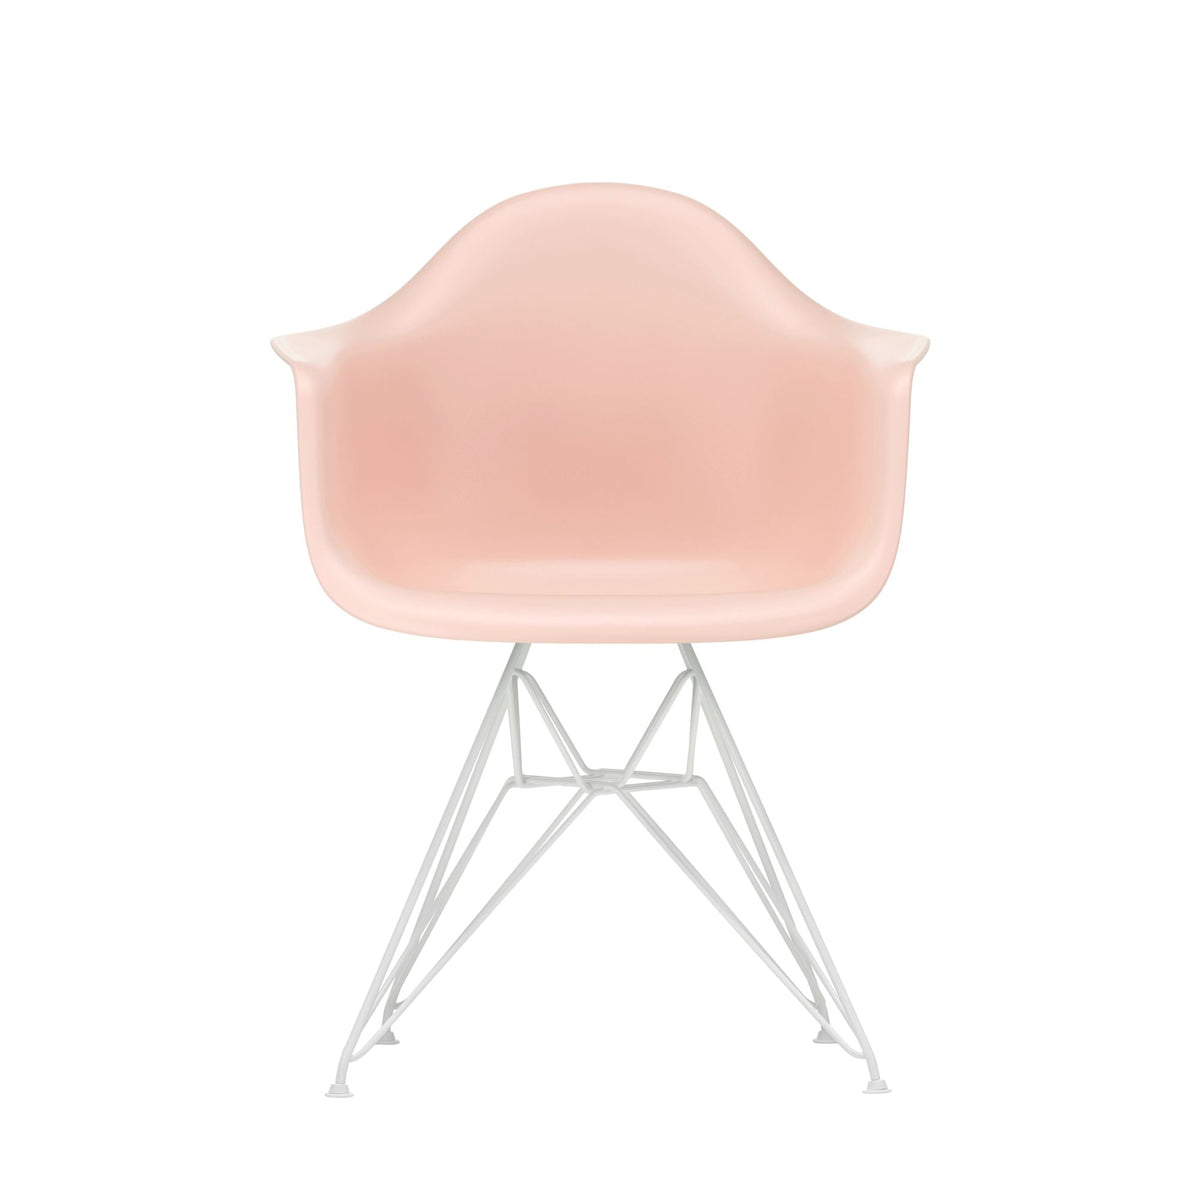 Vitra Eames DAR tuoli RE roosa/valkoinen Vitra